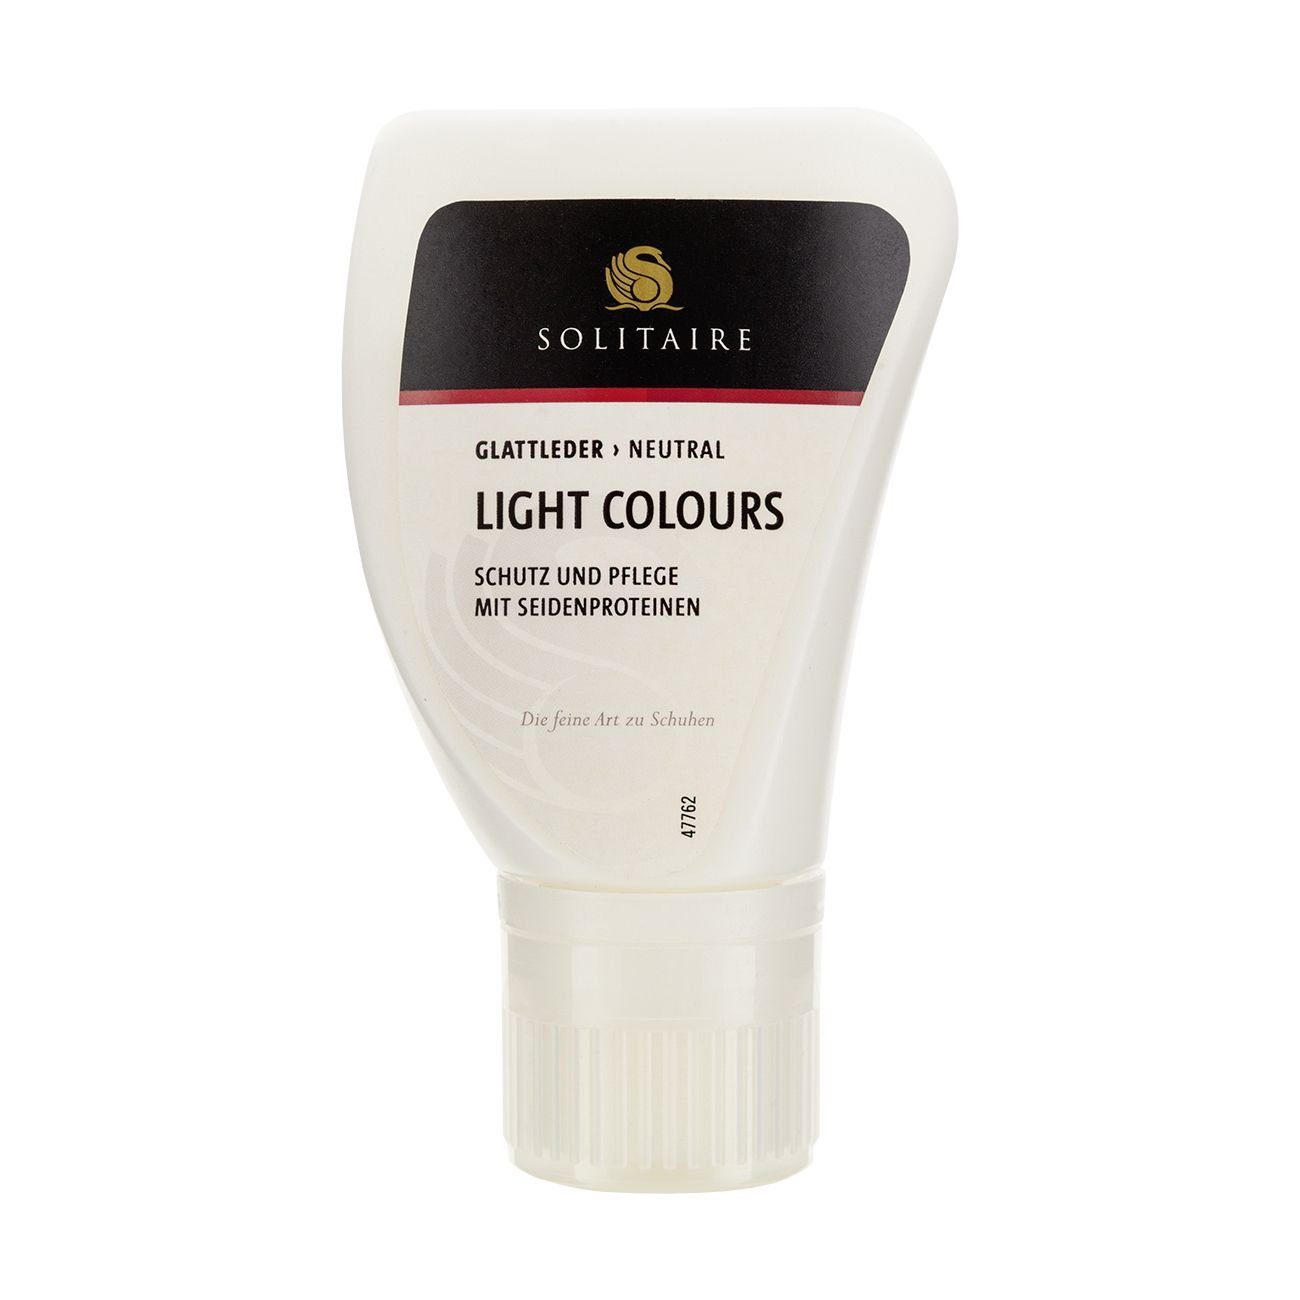 Solitaire Light Colours - feine Lotion mit Bienenwachs und Seidenproteinen Lederpflege